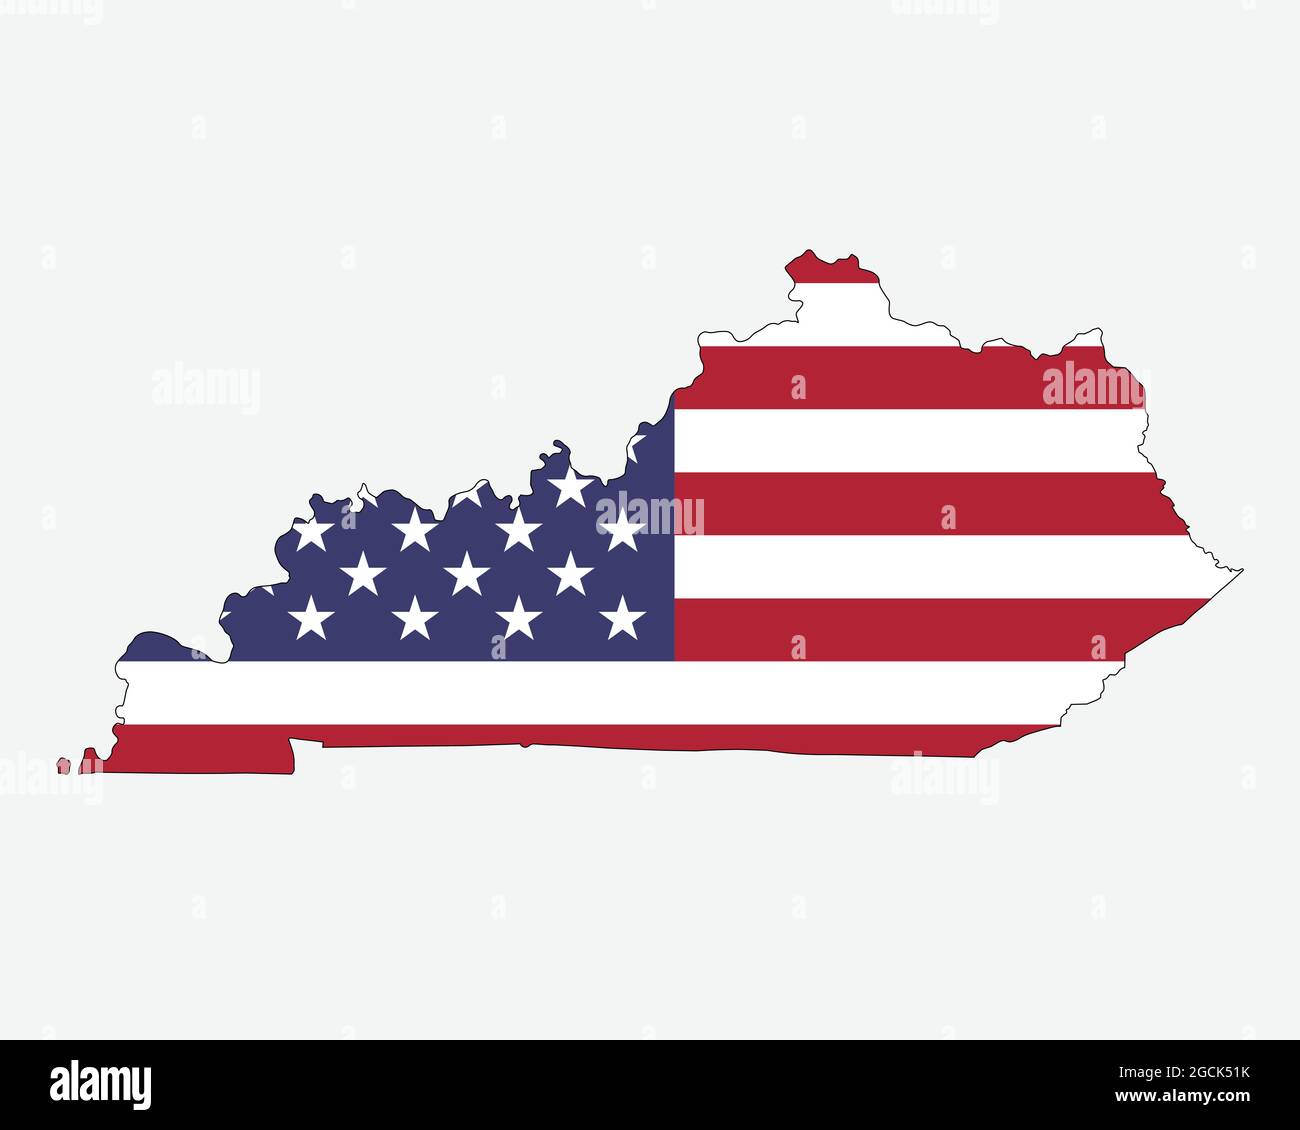 Mappa del Kentucky sulla bandiera americana. KY, mappa dello stato degli Stati Uniti sulla bandiera degli Stati Uniti. Icona Clipart grafica vettoriale EPS Illustrazione Vettoriale